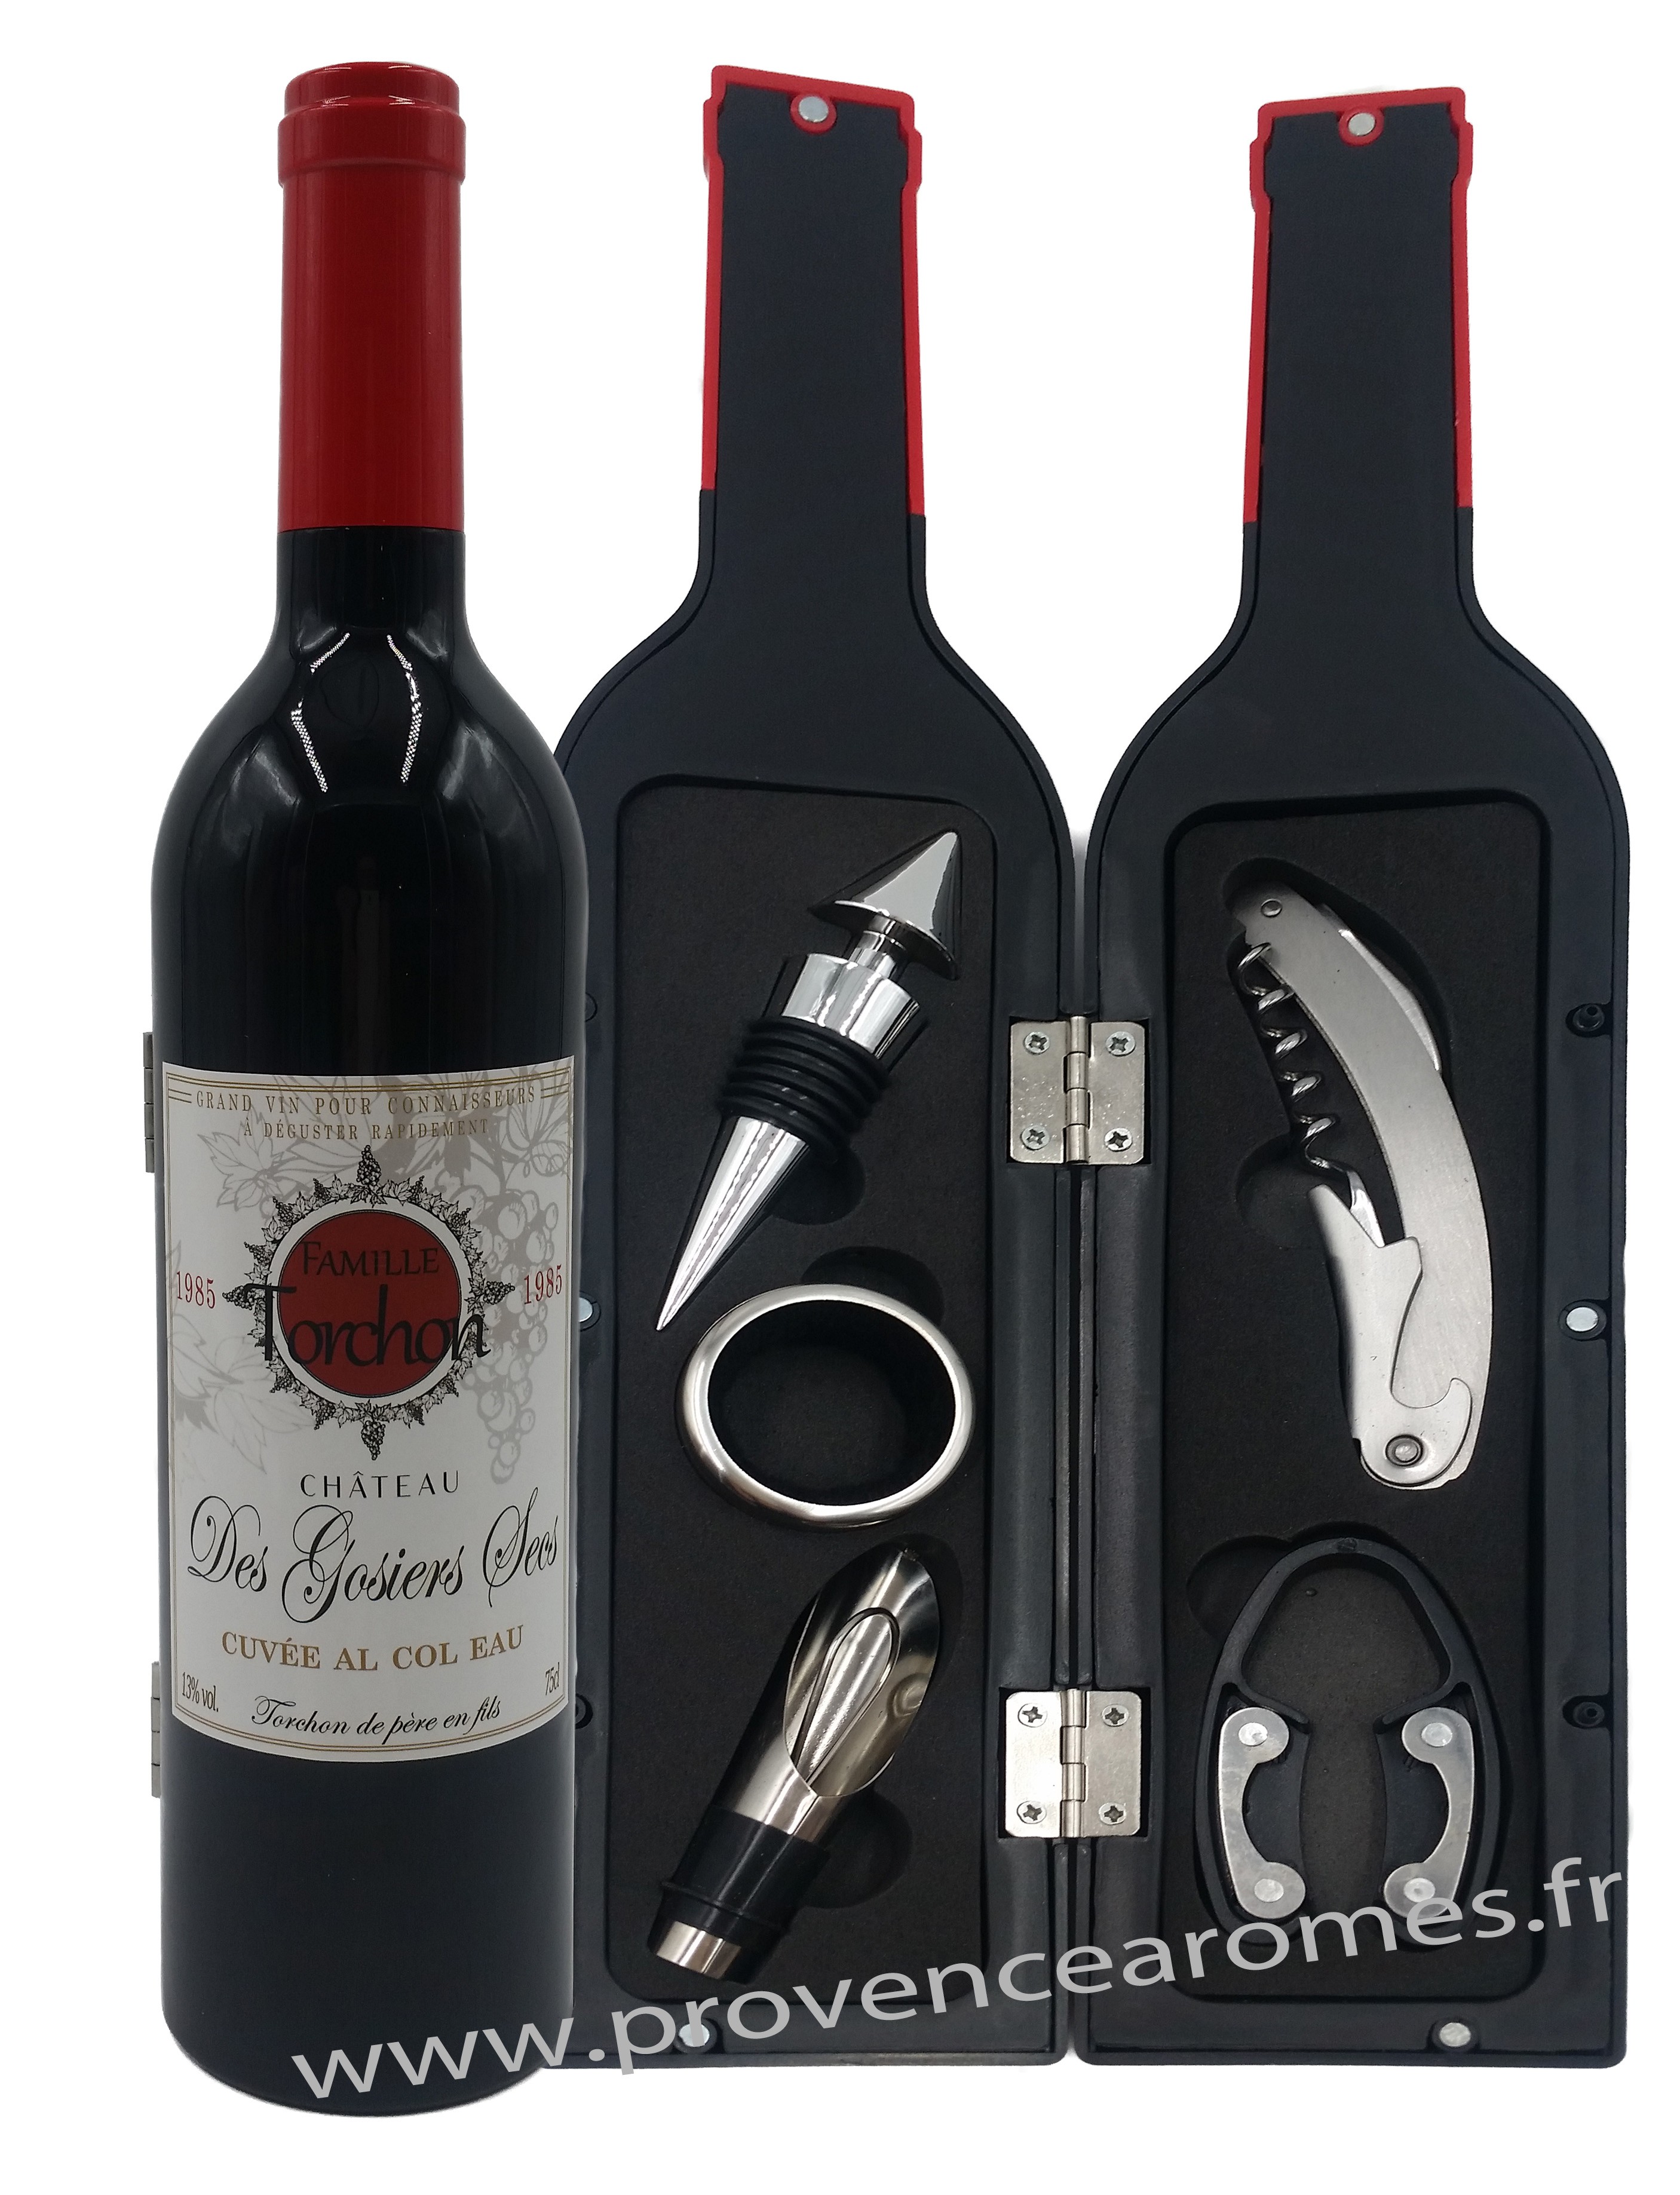 Coffret accessoires vin bouteille de vin Château des Gosiers Secs -  Provence Arômes Tendance sud